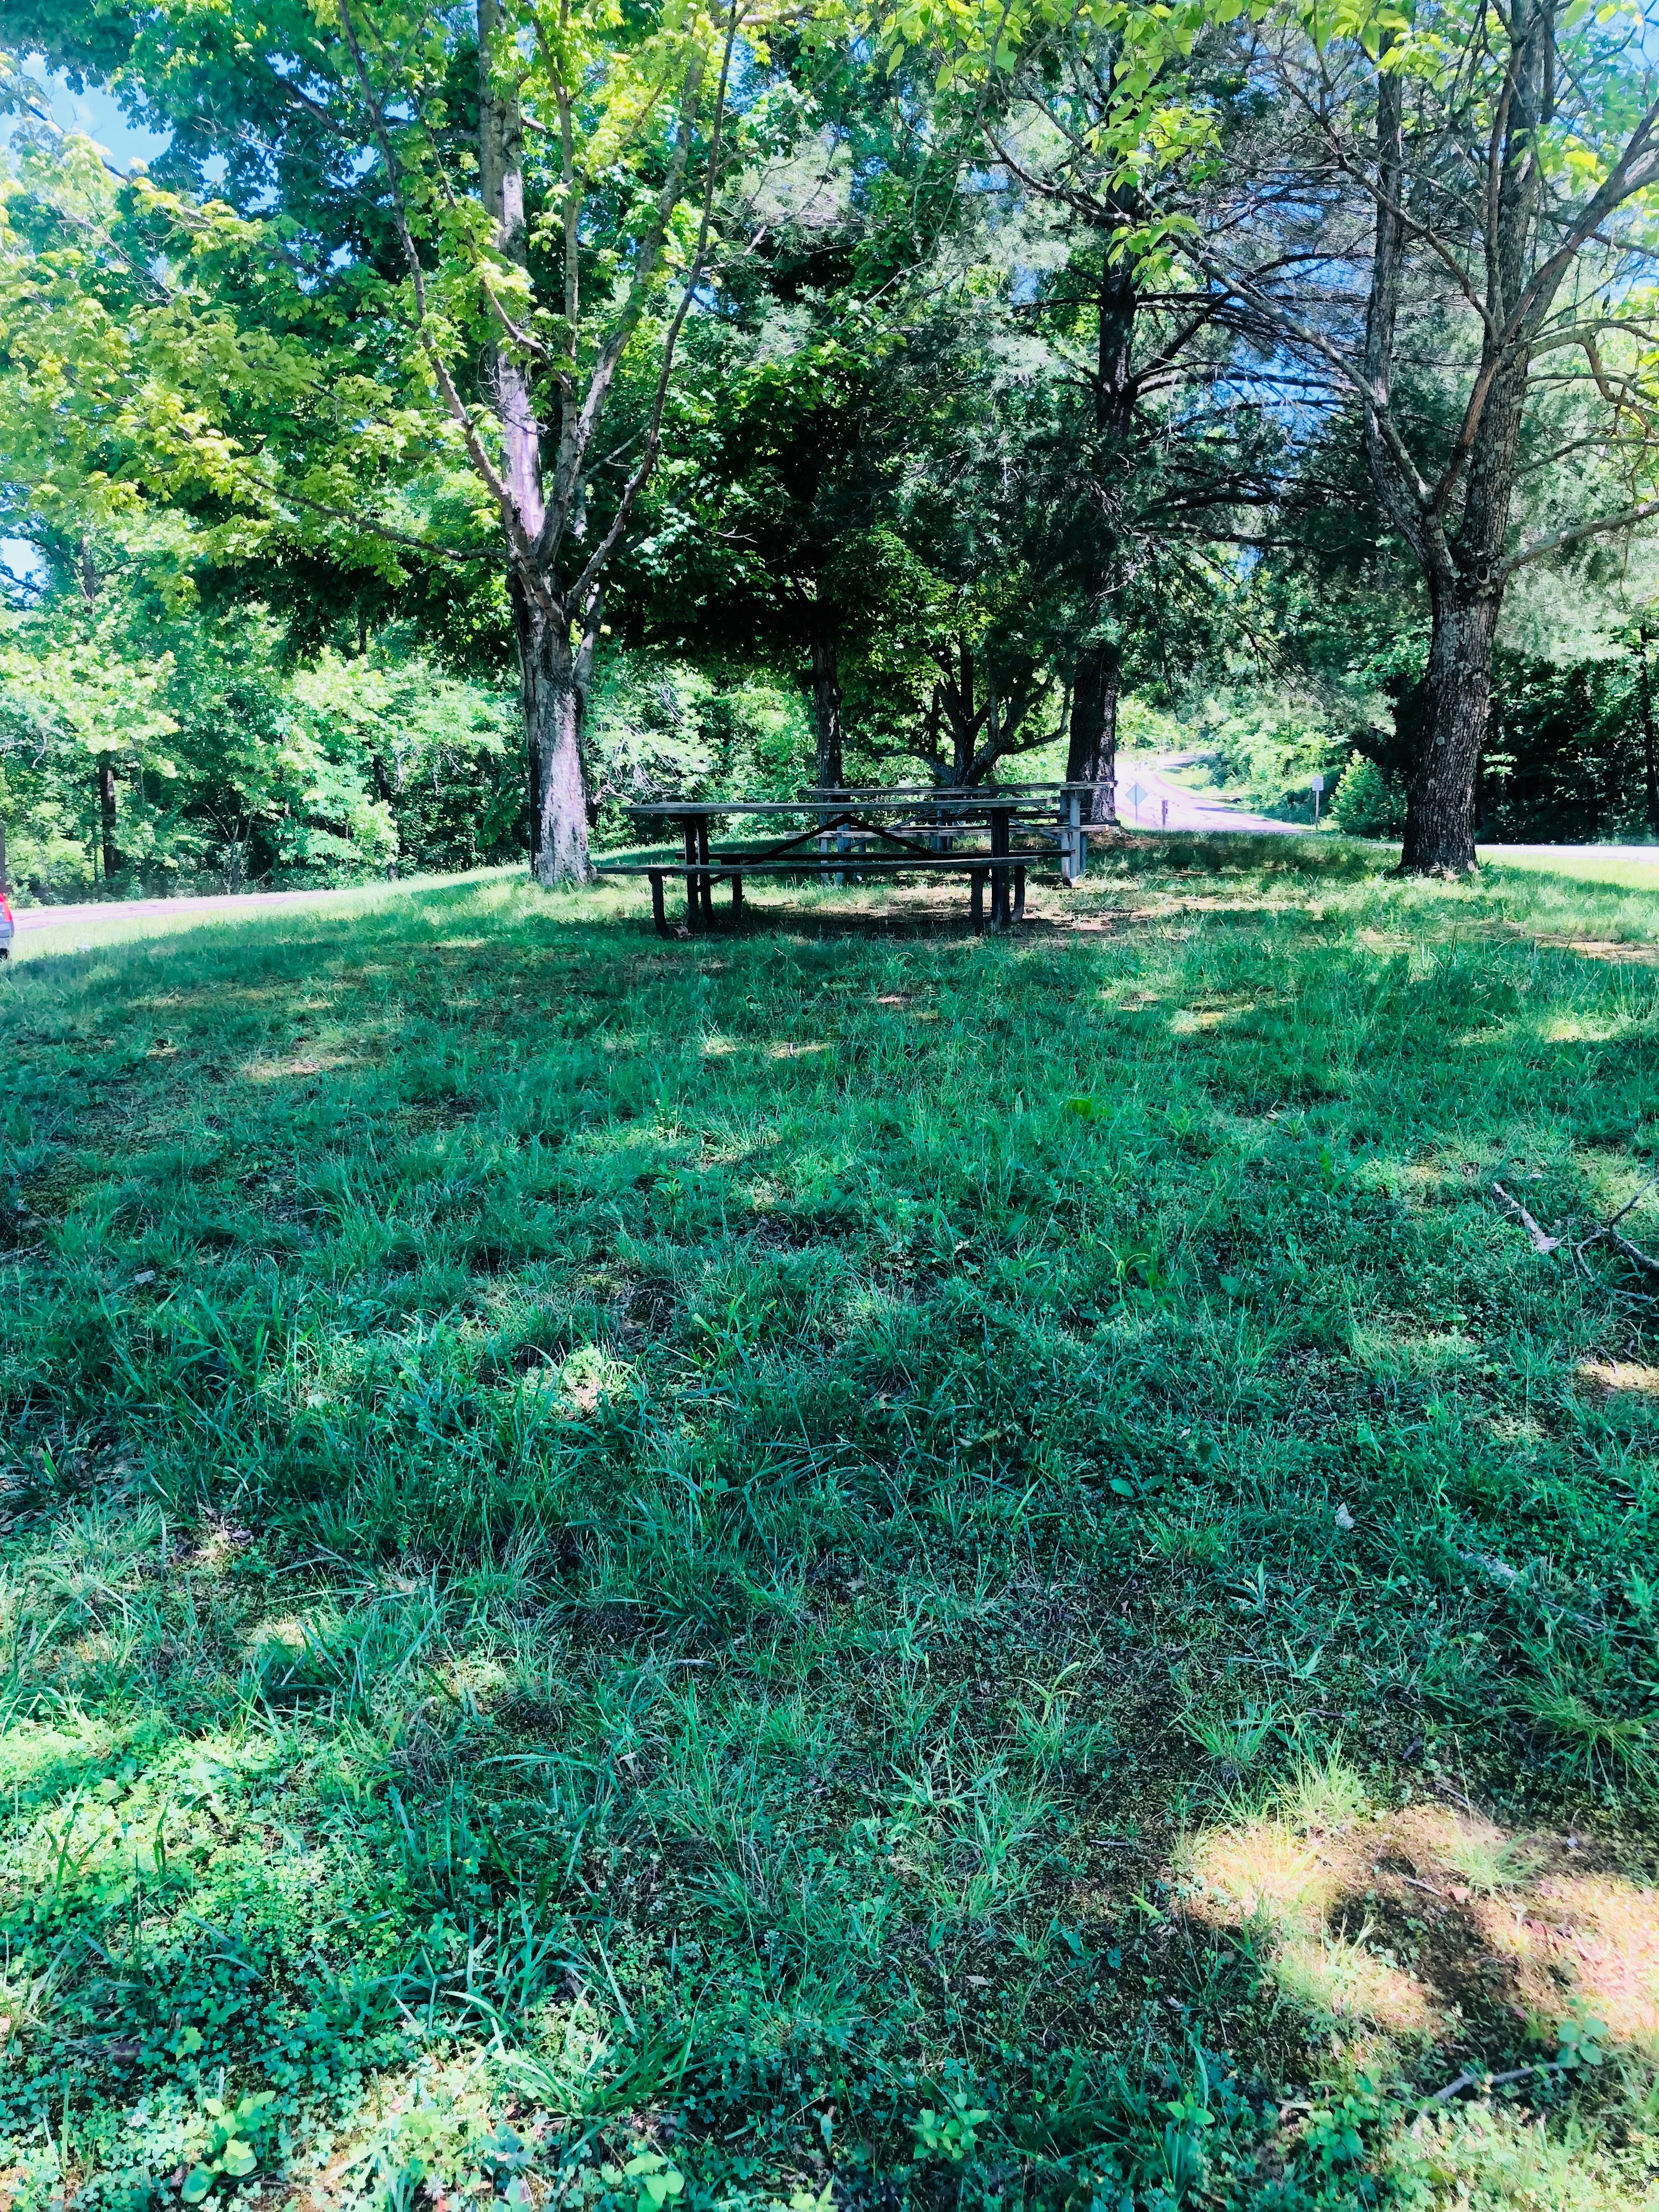 The small picnic area